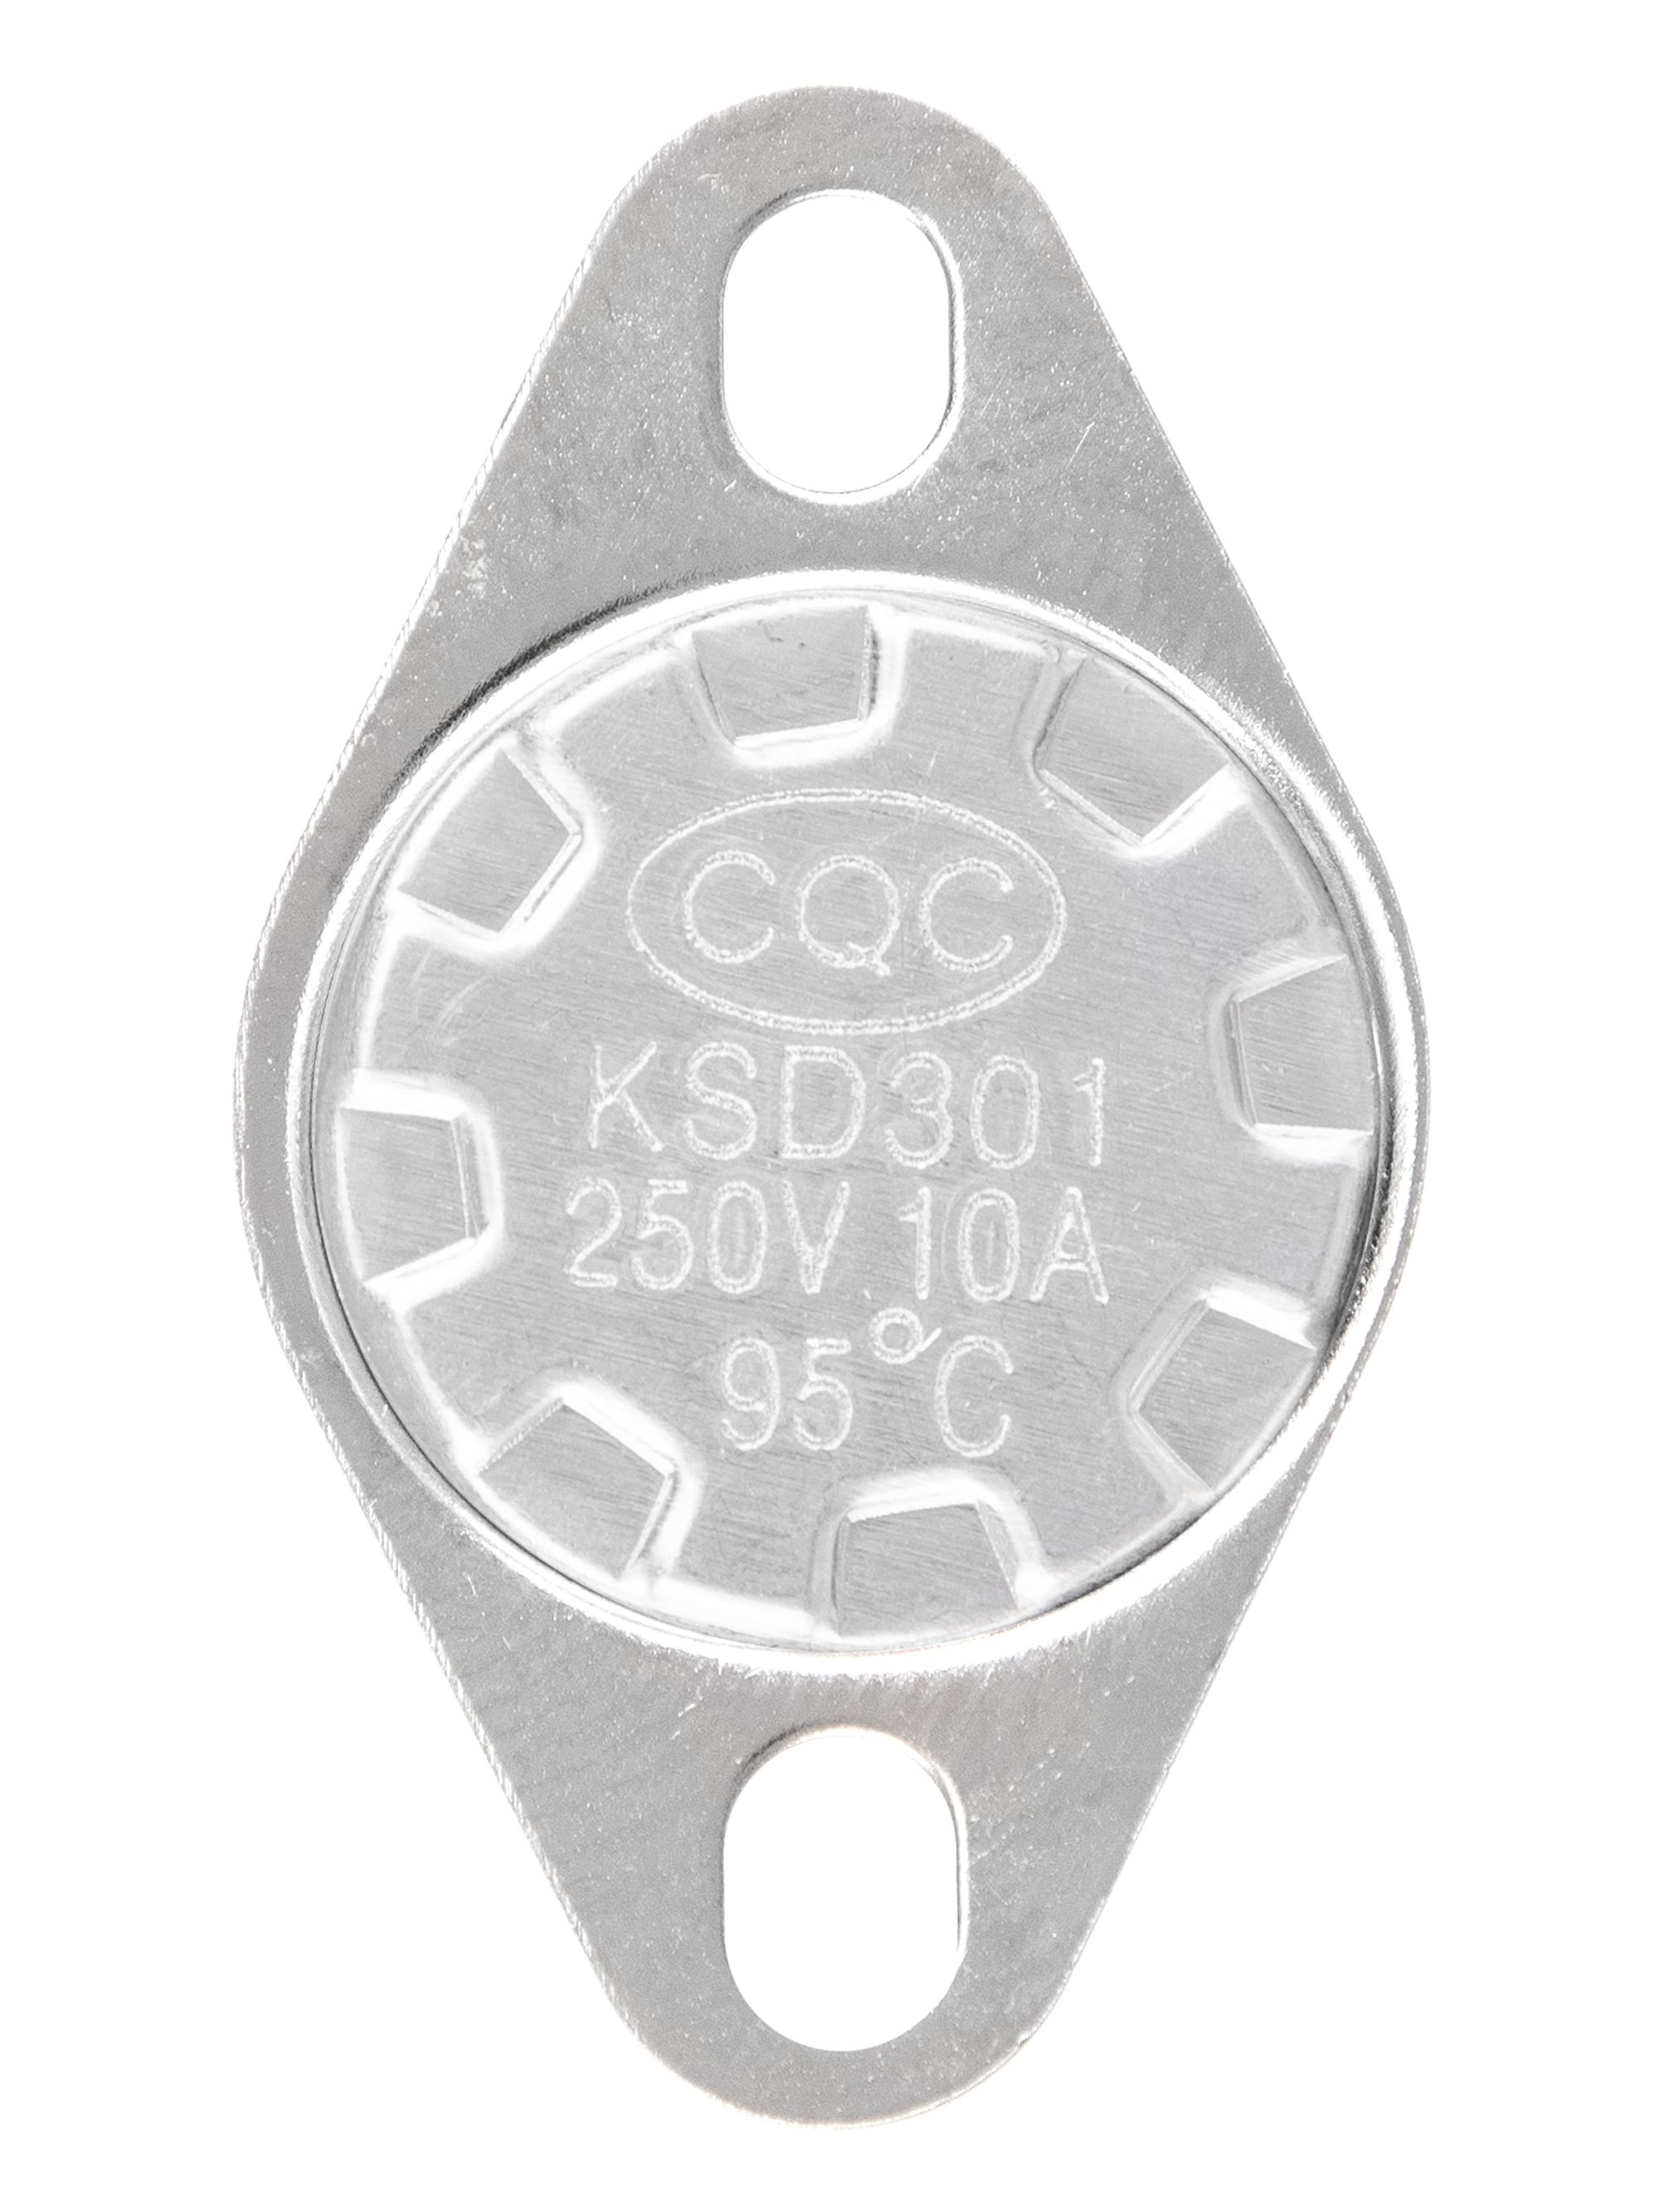 Предельный термостат с подвижным фланцем/датчик тяги/термореле KSD301 250V10A, 95 С